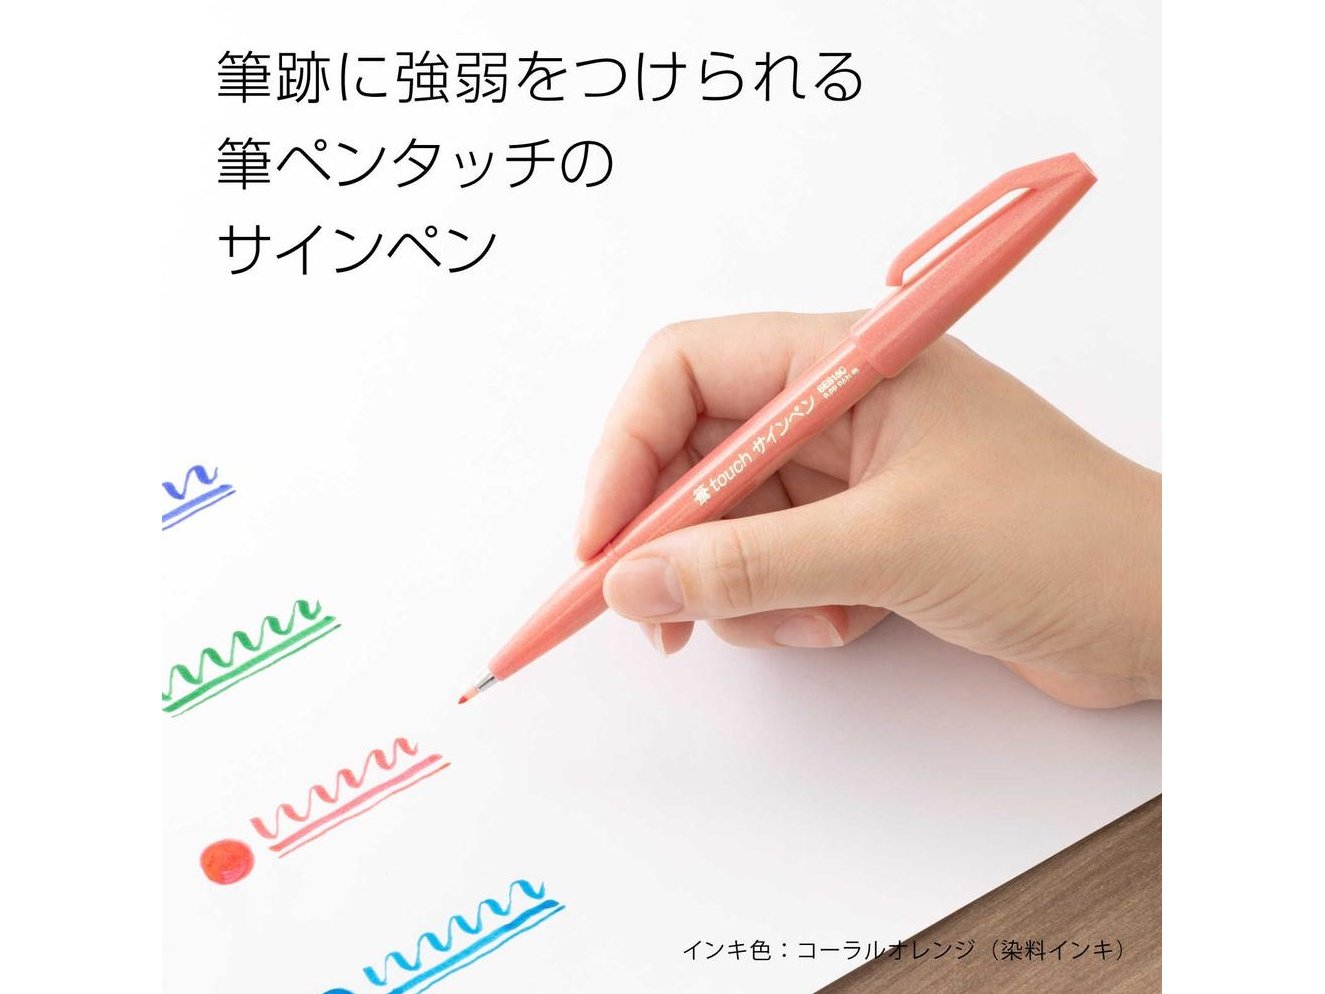 Pentel Colour Brush Pen 6-Colour Set